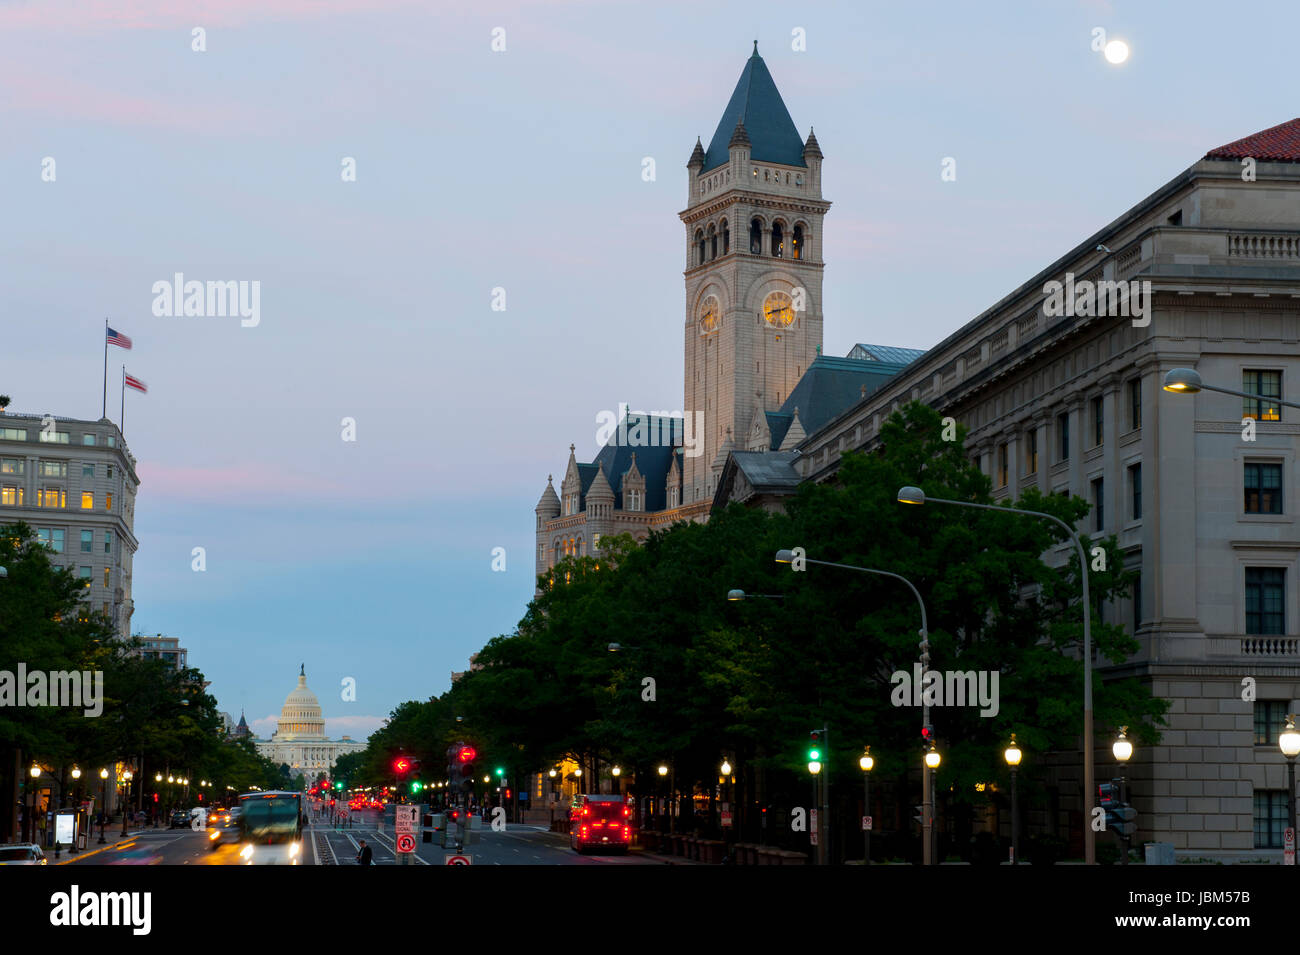 Ee.Uu. Washington D.C. de la Avenida Pennsylvania Ave con Trump International Hotel está a la derecha y el Edificio del Capitolio de Estados Unidos en la distancia por la noche con luna llena Foto de stock